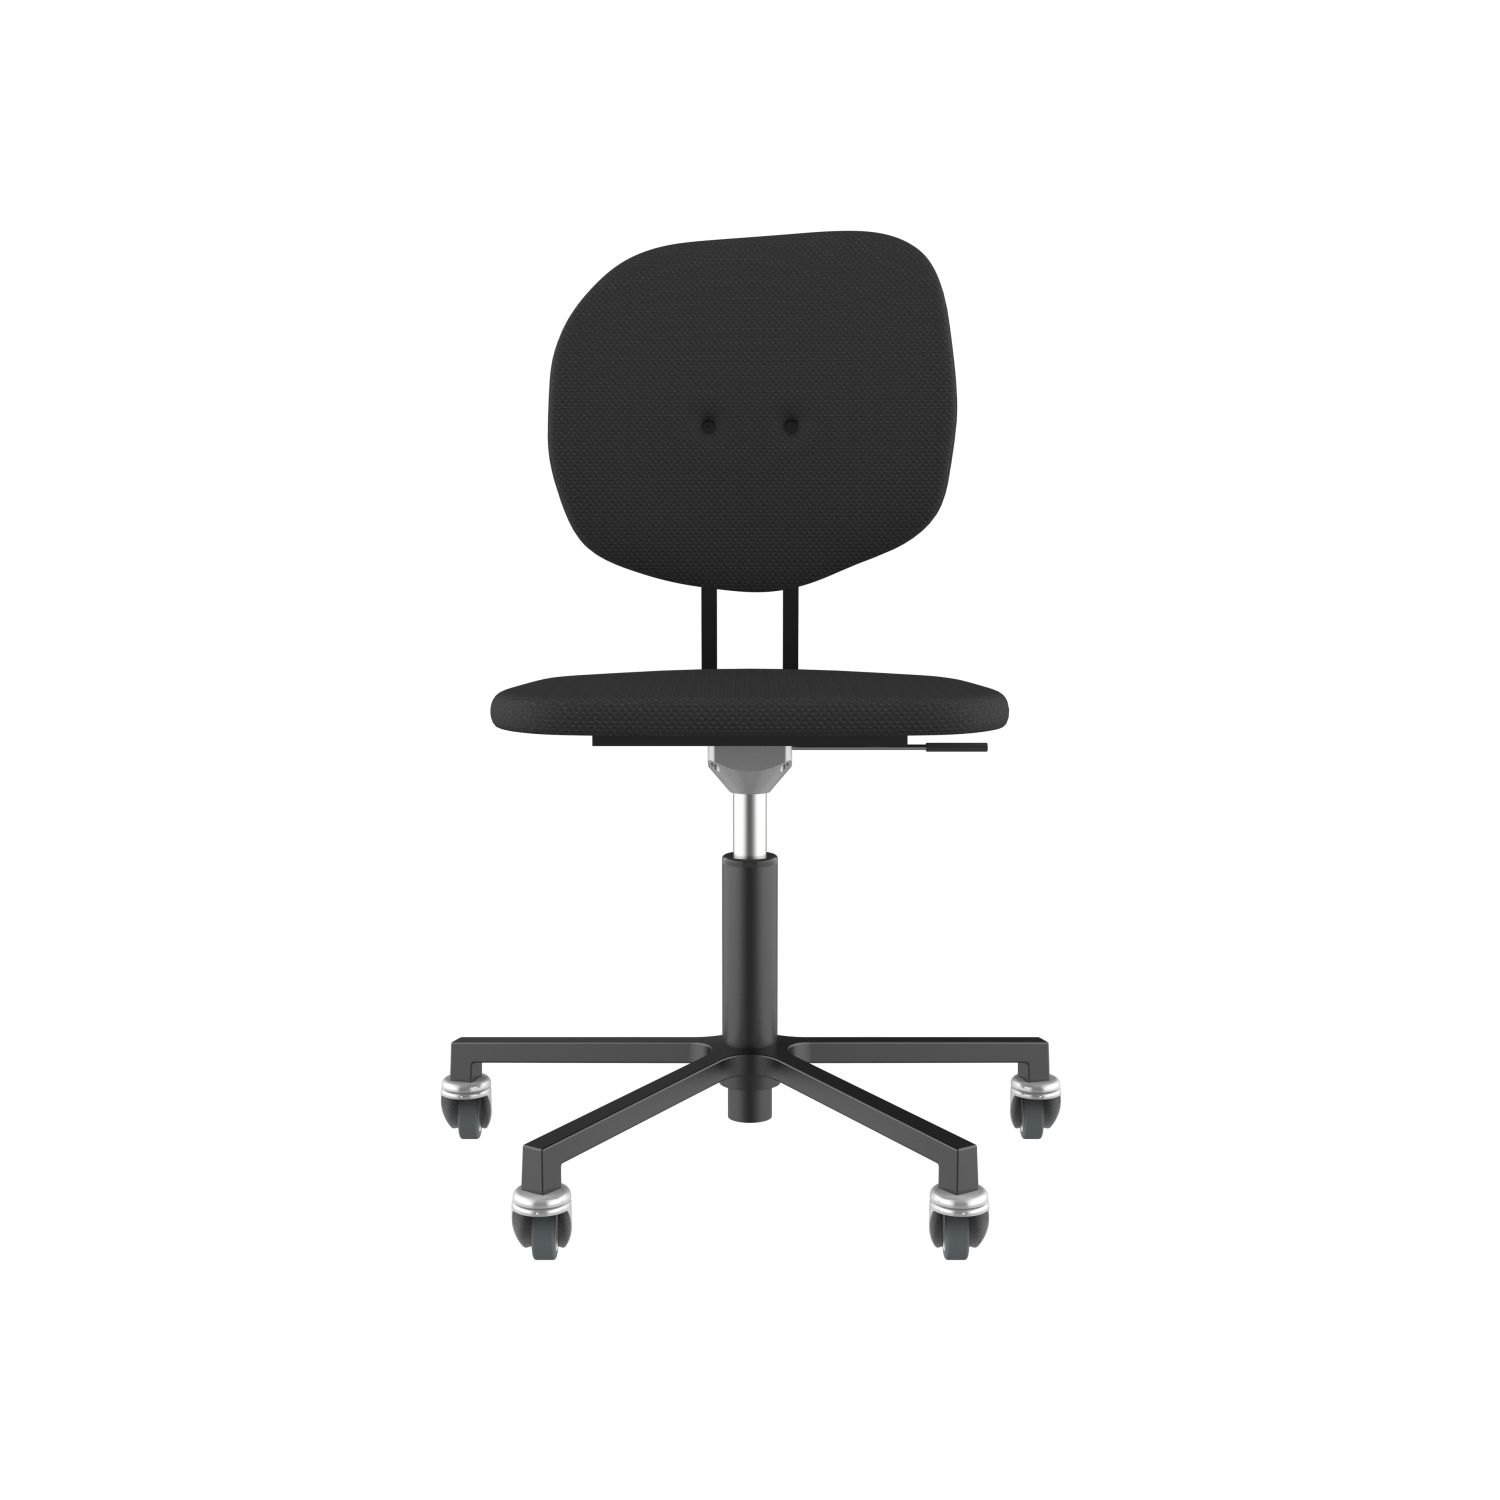 lensvelt maarten baas office chair without armrests backrest h havana black 090 black ral9005 soft wheels